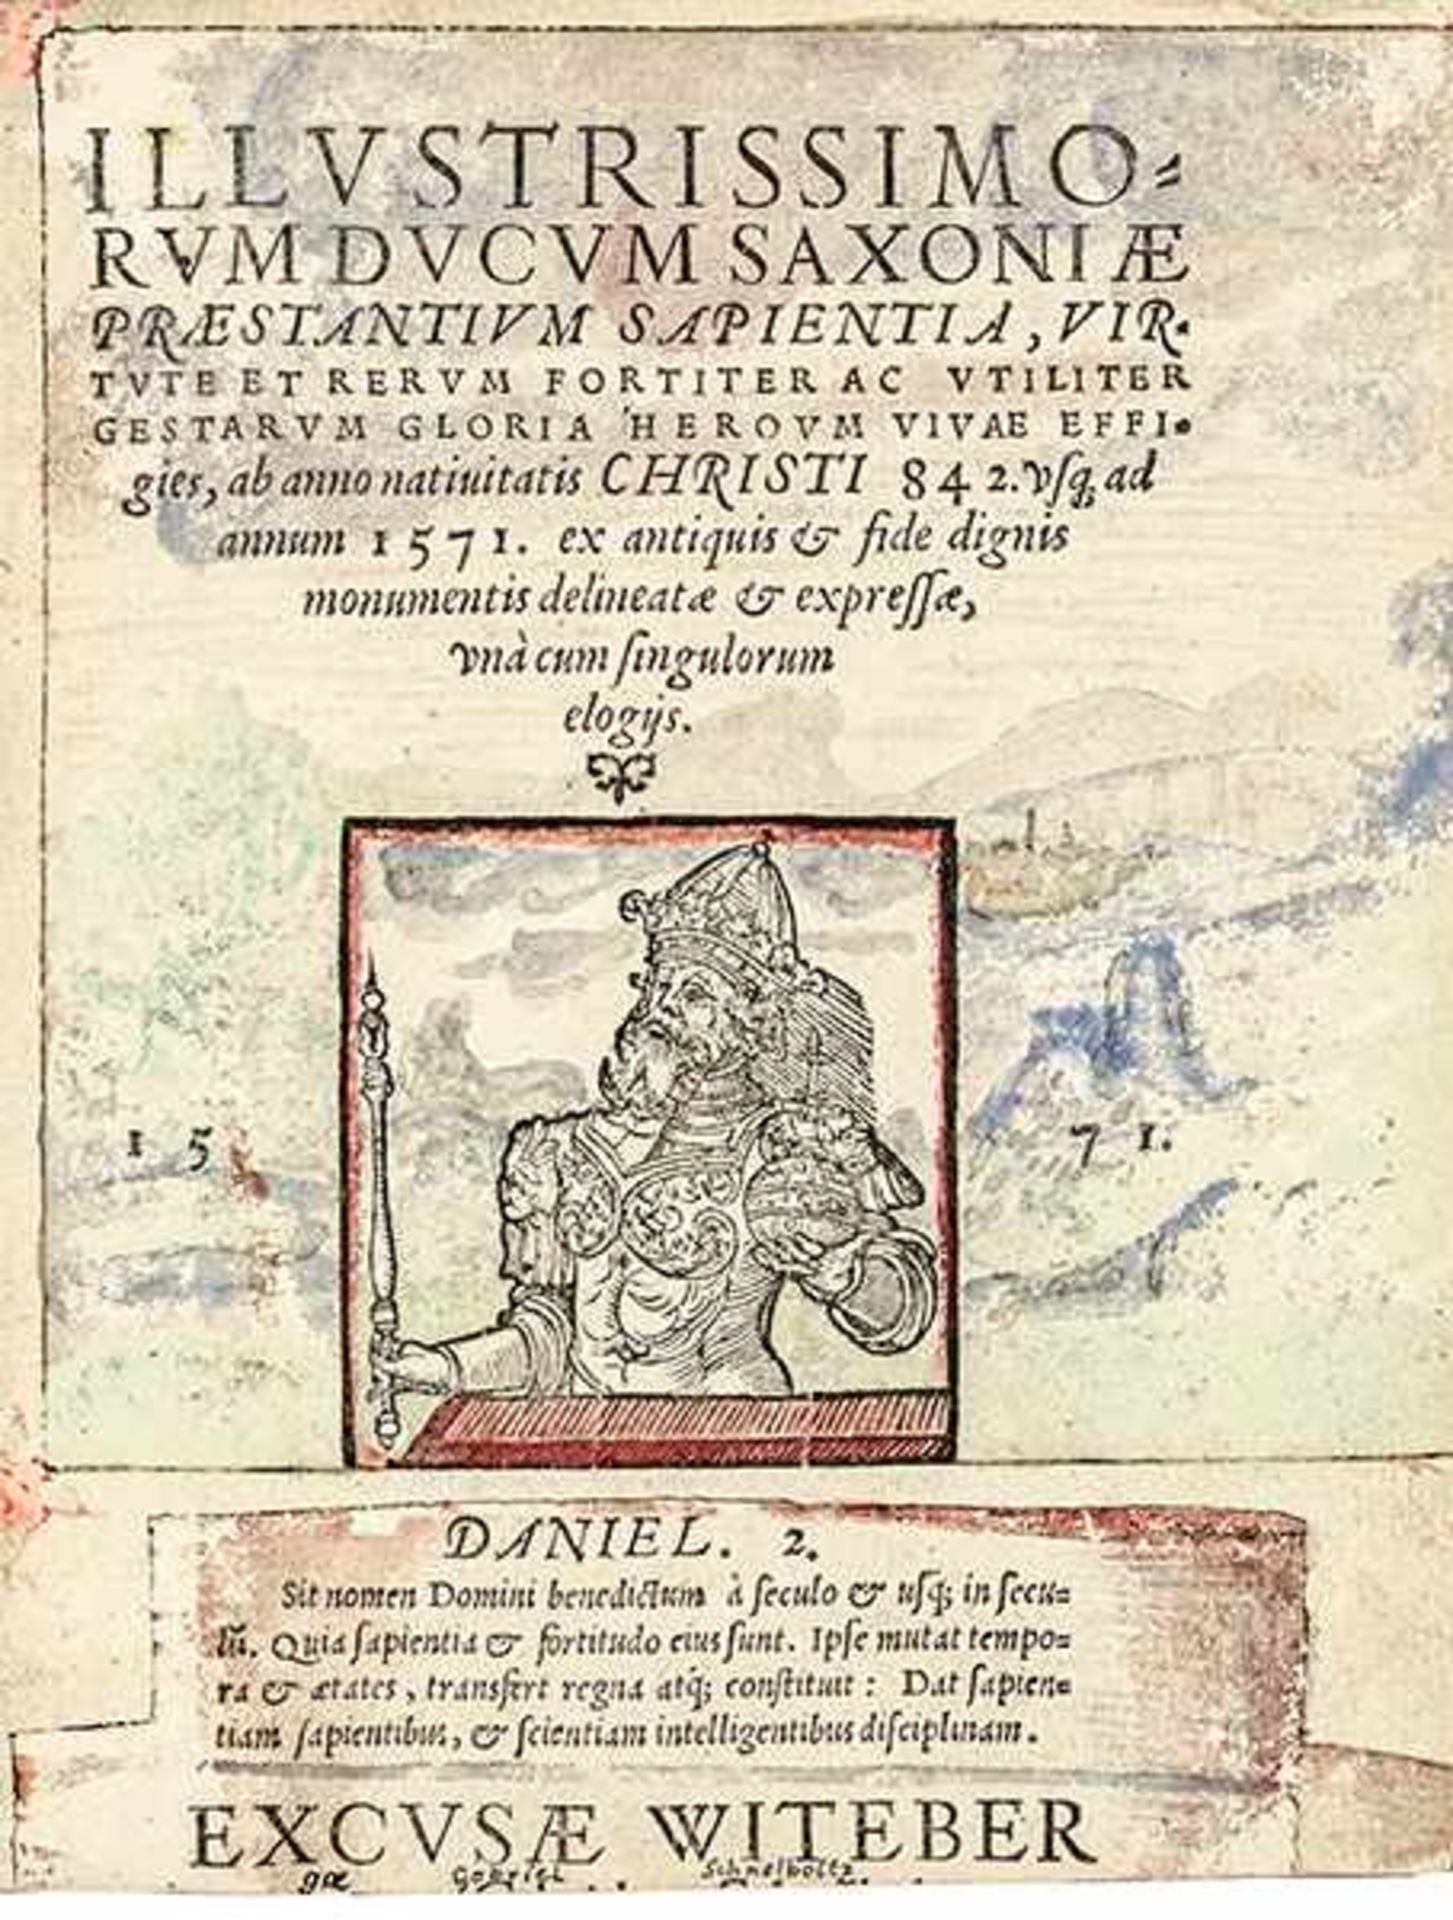 Agricola von Spremberg, Johann. Illustrissimorum Ducum Saxoniae praestantium sapientia, virtute et - Bild 4 aus 12